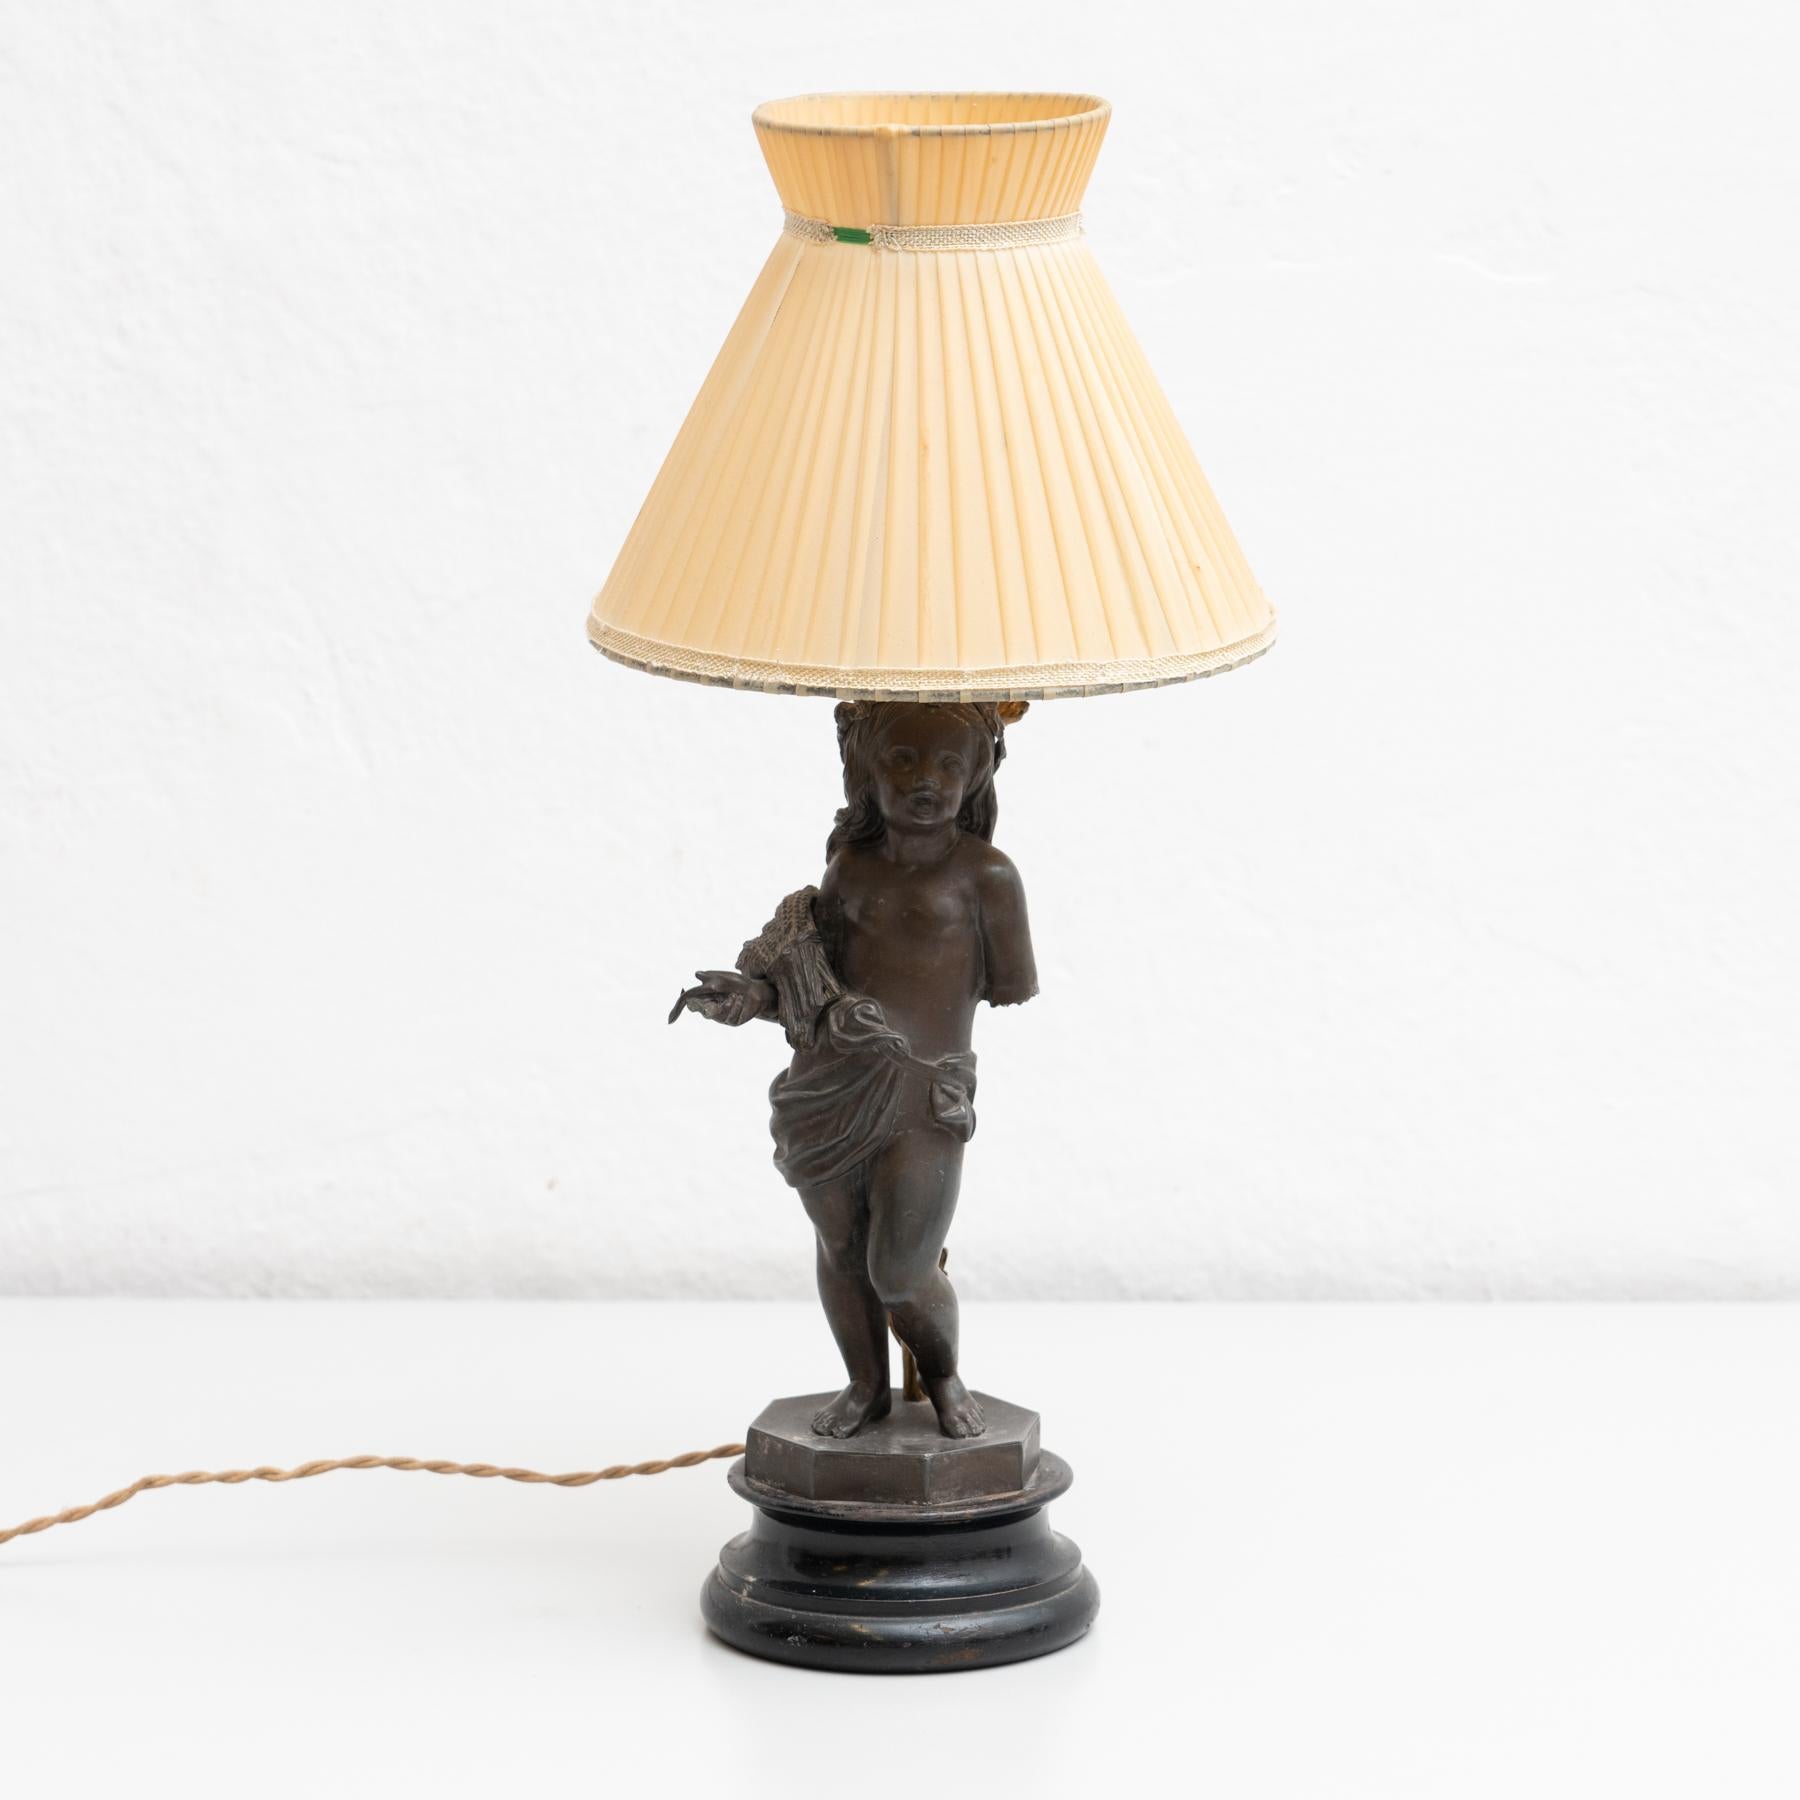 Lampe de table du début du 20e siècle, avec une belle décoration d'un garçon et d'un écran de papier.

Fabriqué par un designer inconnu en Espagne.

En état d'origine, avec une usure mineure conforme à l'âge et à l'utilisation, préservant une